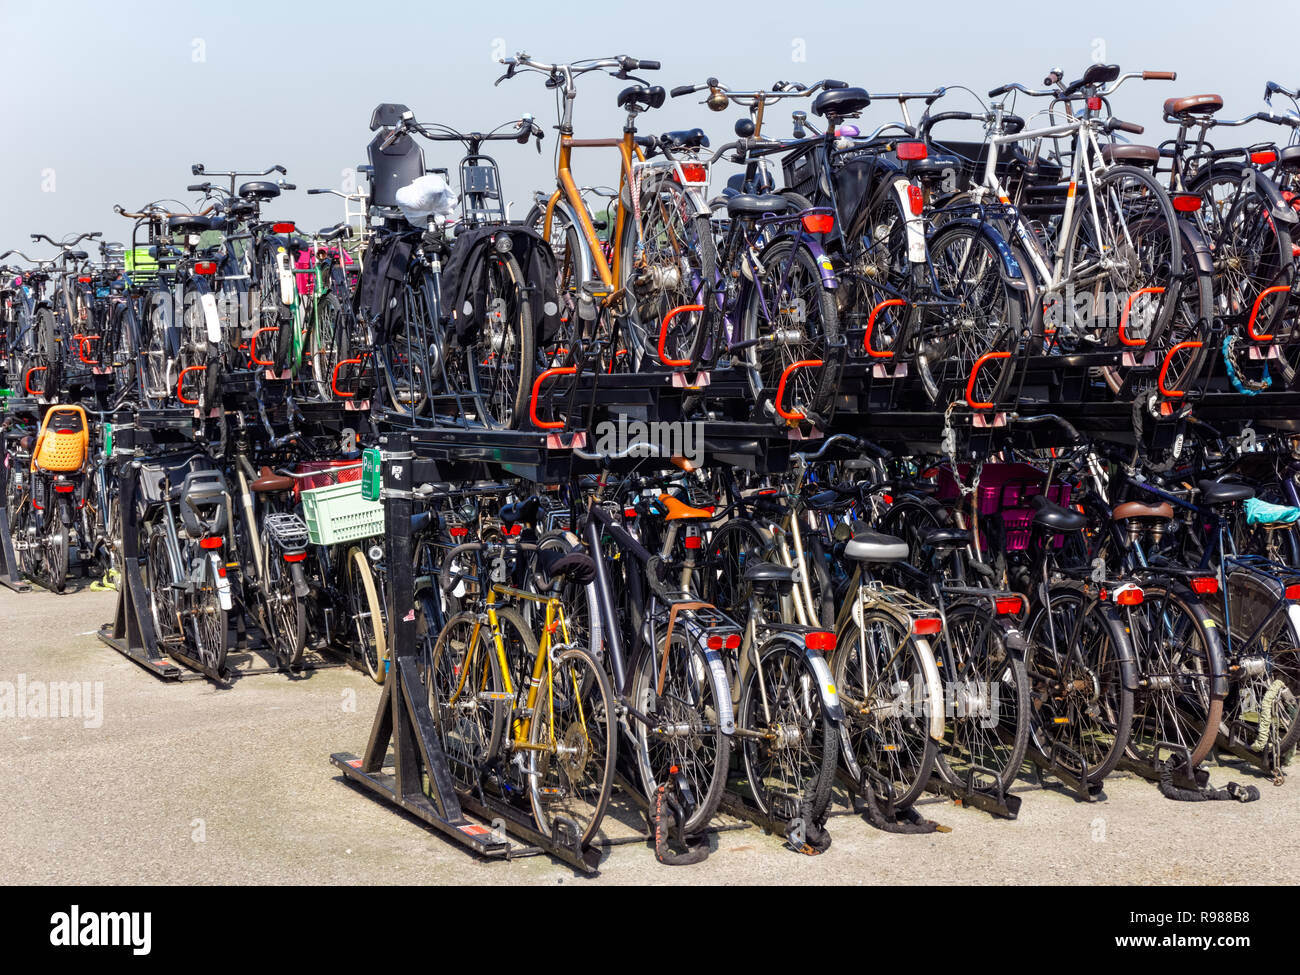 Le stationnement des vélos à Amsterdam, Pays-Bas Banque D'Images